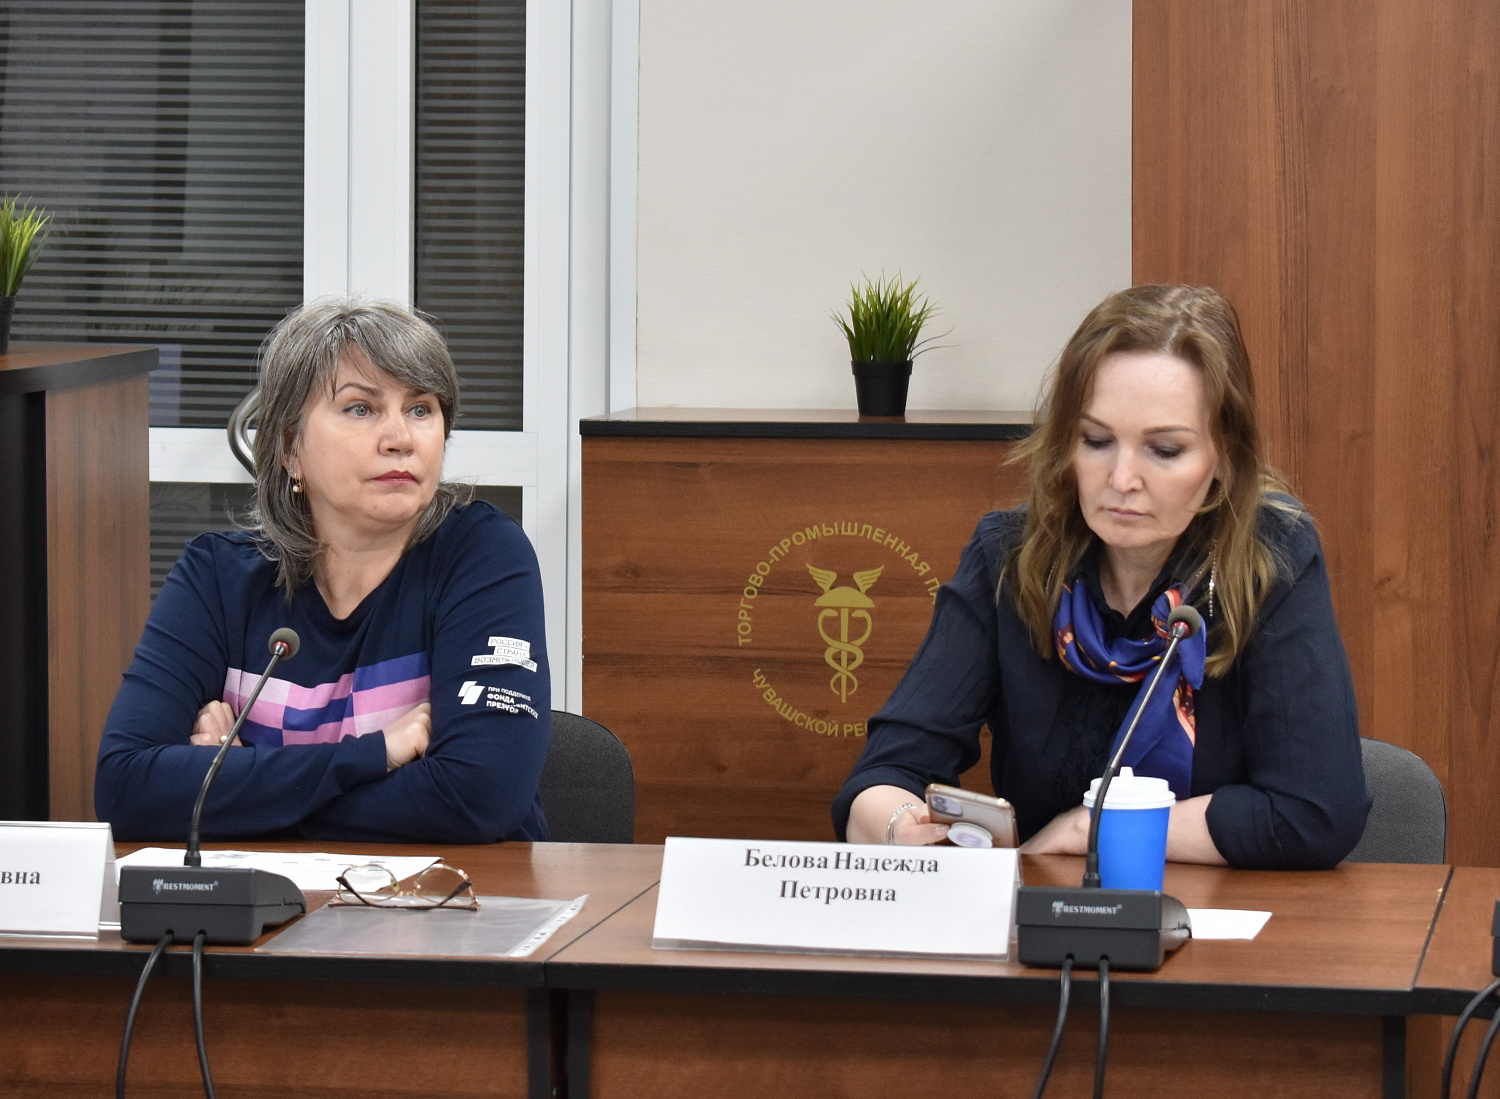 24 мая 2022 г. в Торгово-промышленной палате Чувашской Республики состоялось заседание Клуба кадровиков.